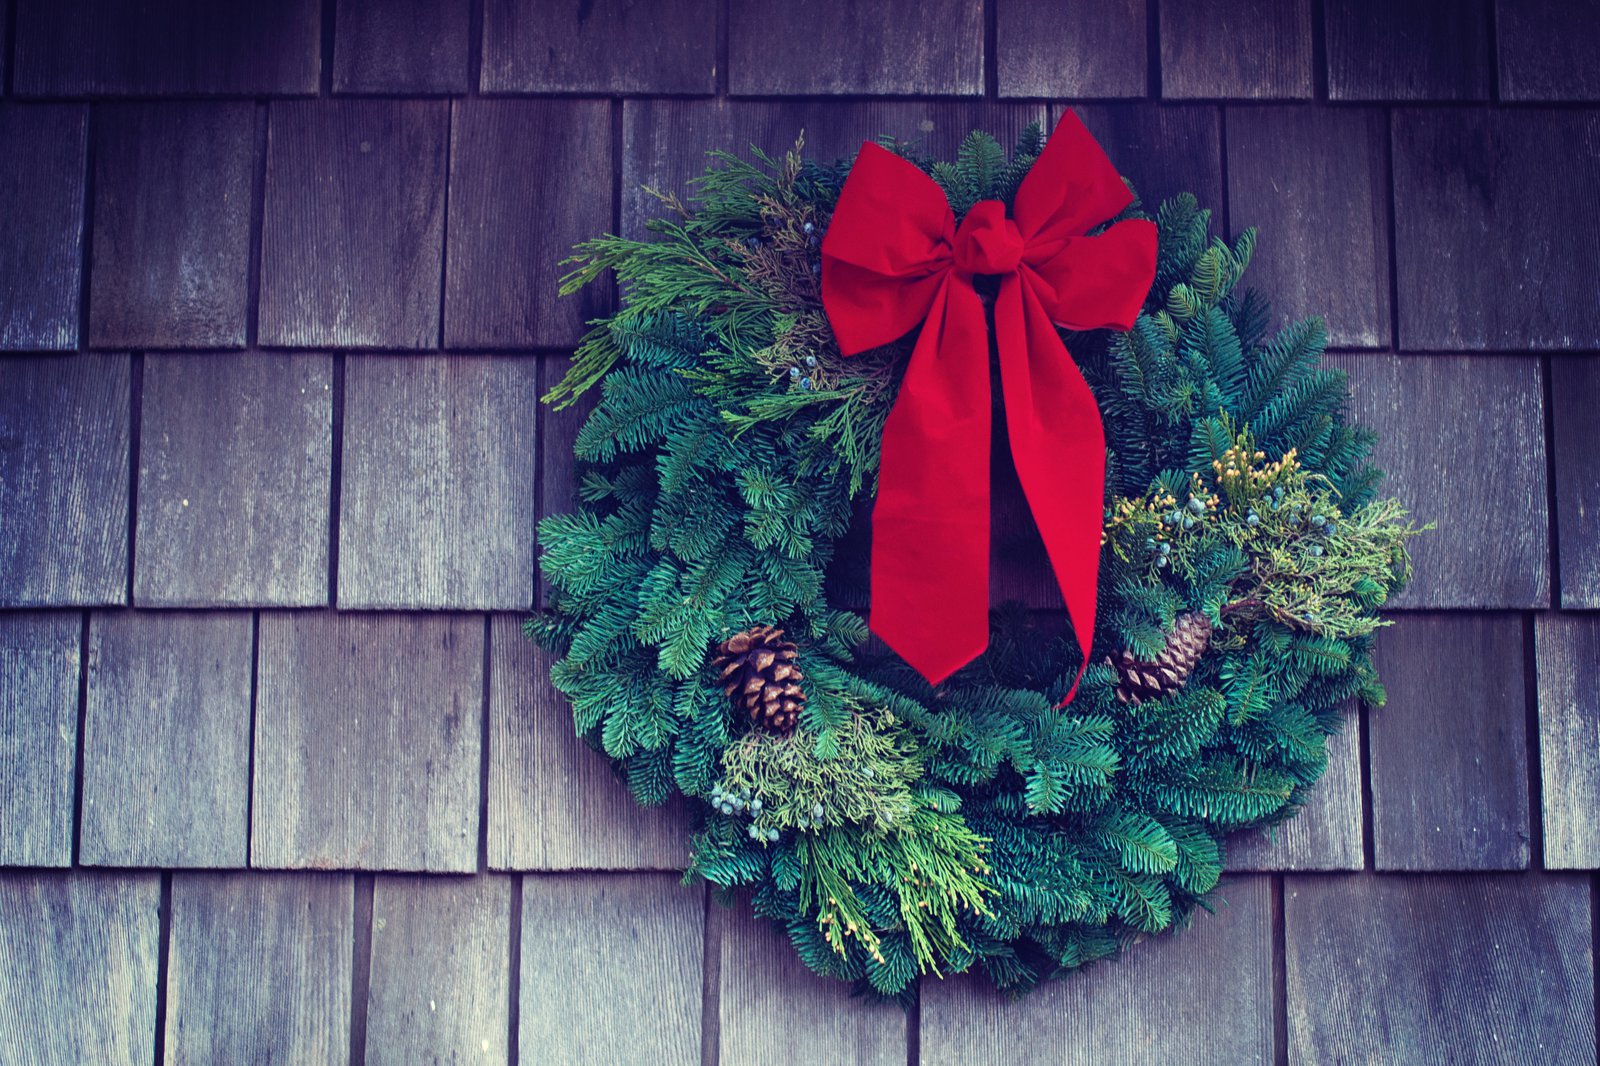 Ein grüner Weihnachtskranz hängt an einer hölzernen Wand.